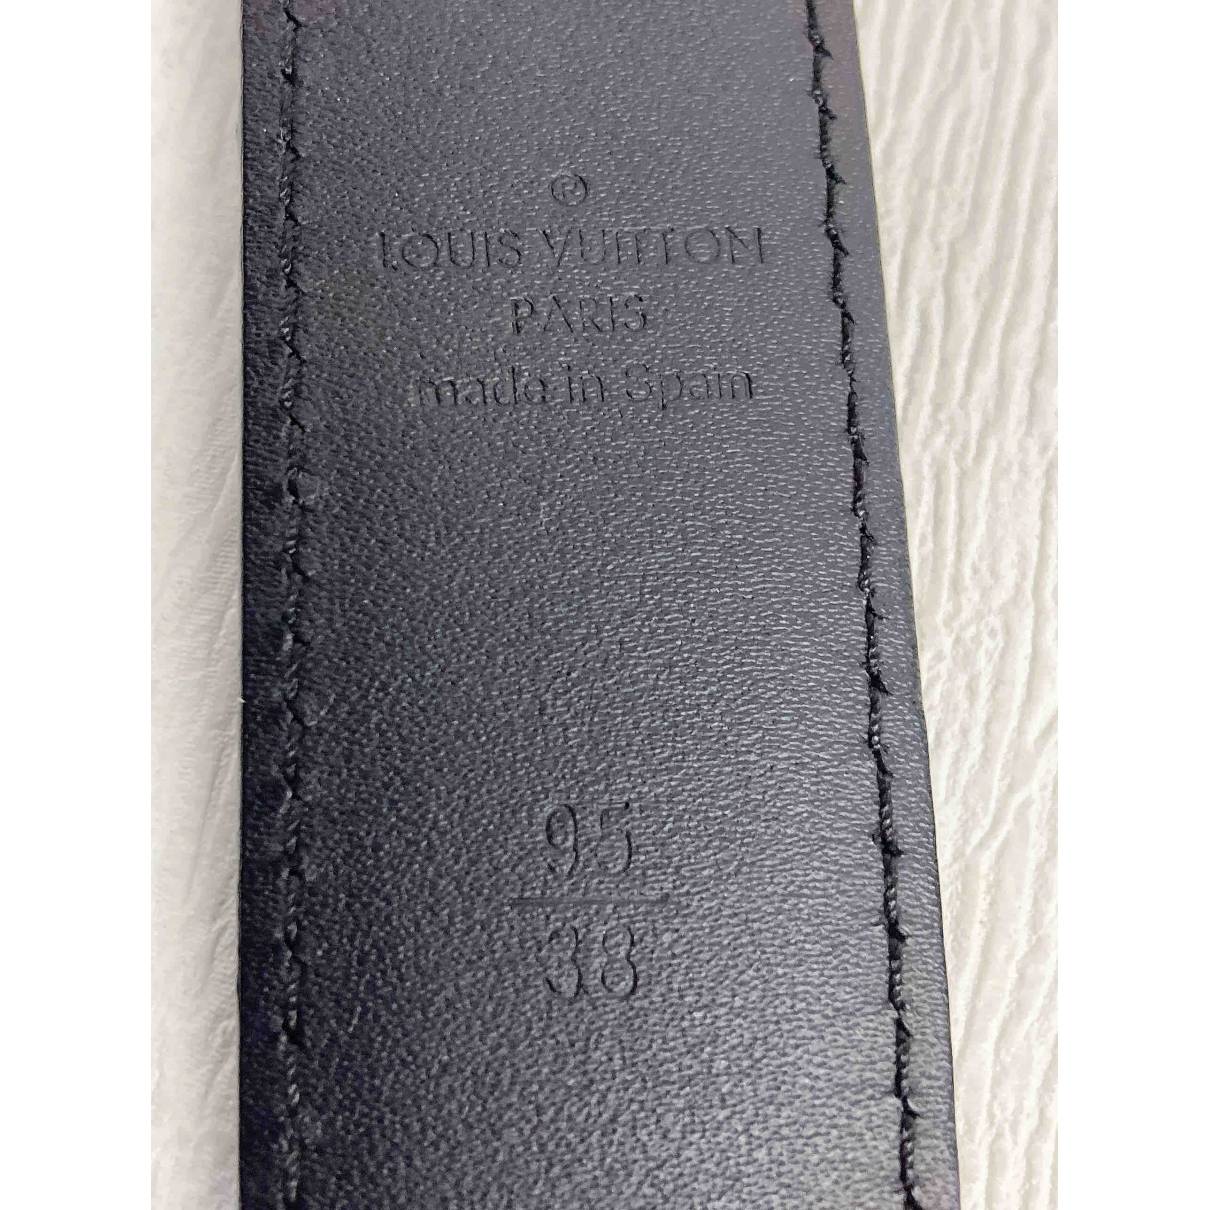 LOUIS VUITTON Belts Louis Vuitton Cloth For Male 95 Cm for Men